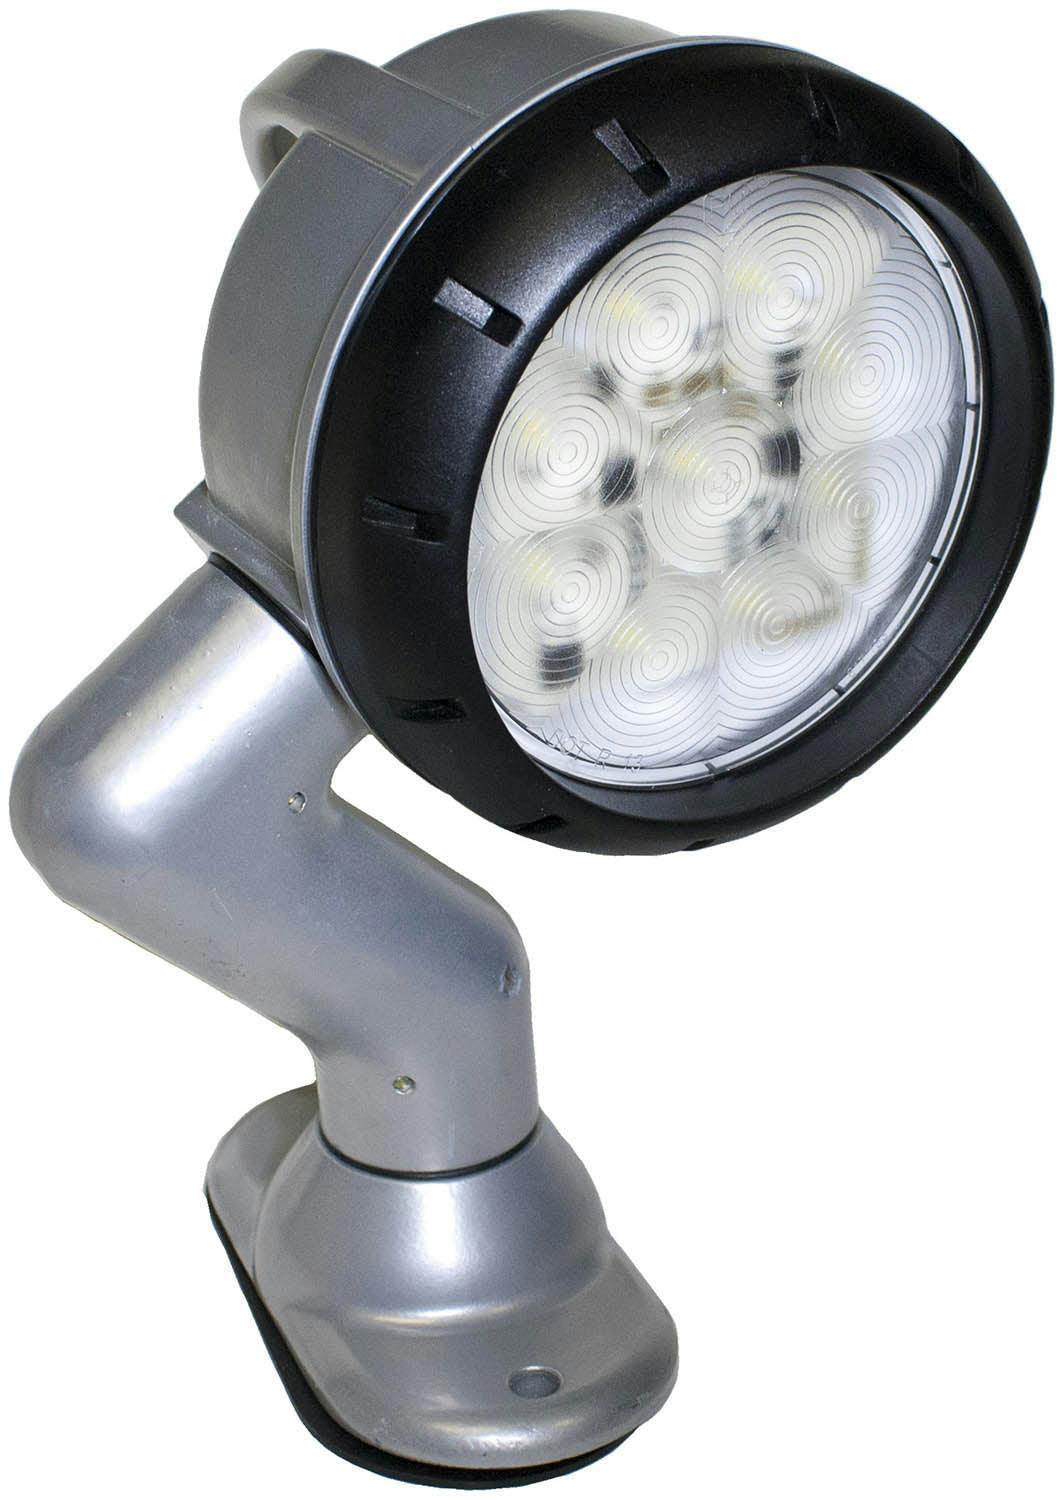 LED Work Light, Round, Pedestal-Mount Swivel 800 Lumen 6.20"X8.60", white, box - 916S_d7bba295-effa-4d91-bdc0-f4cc43e5a838